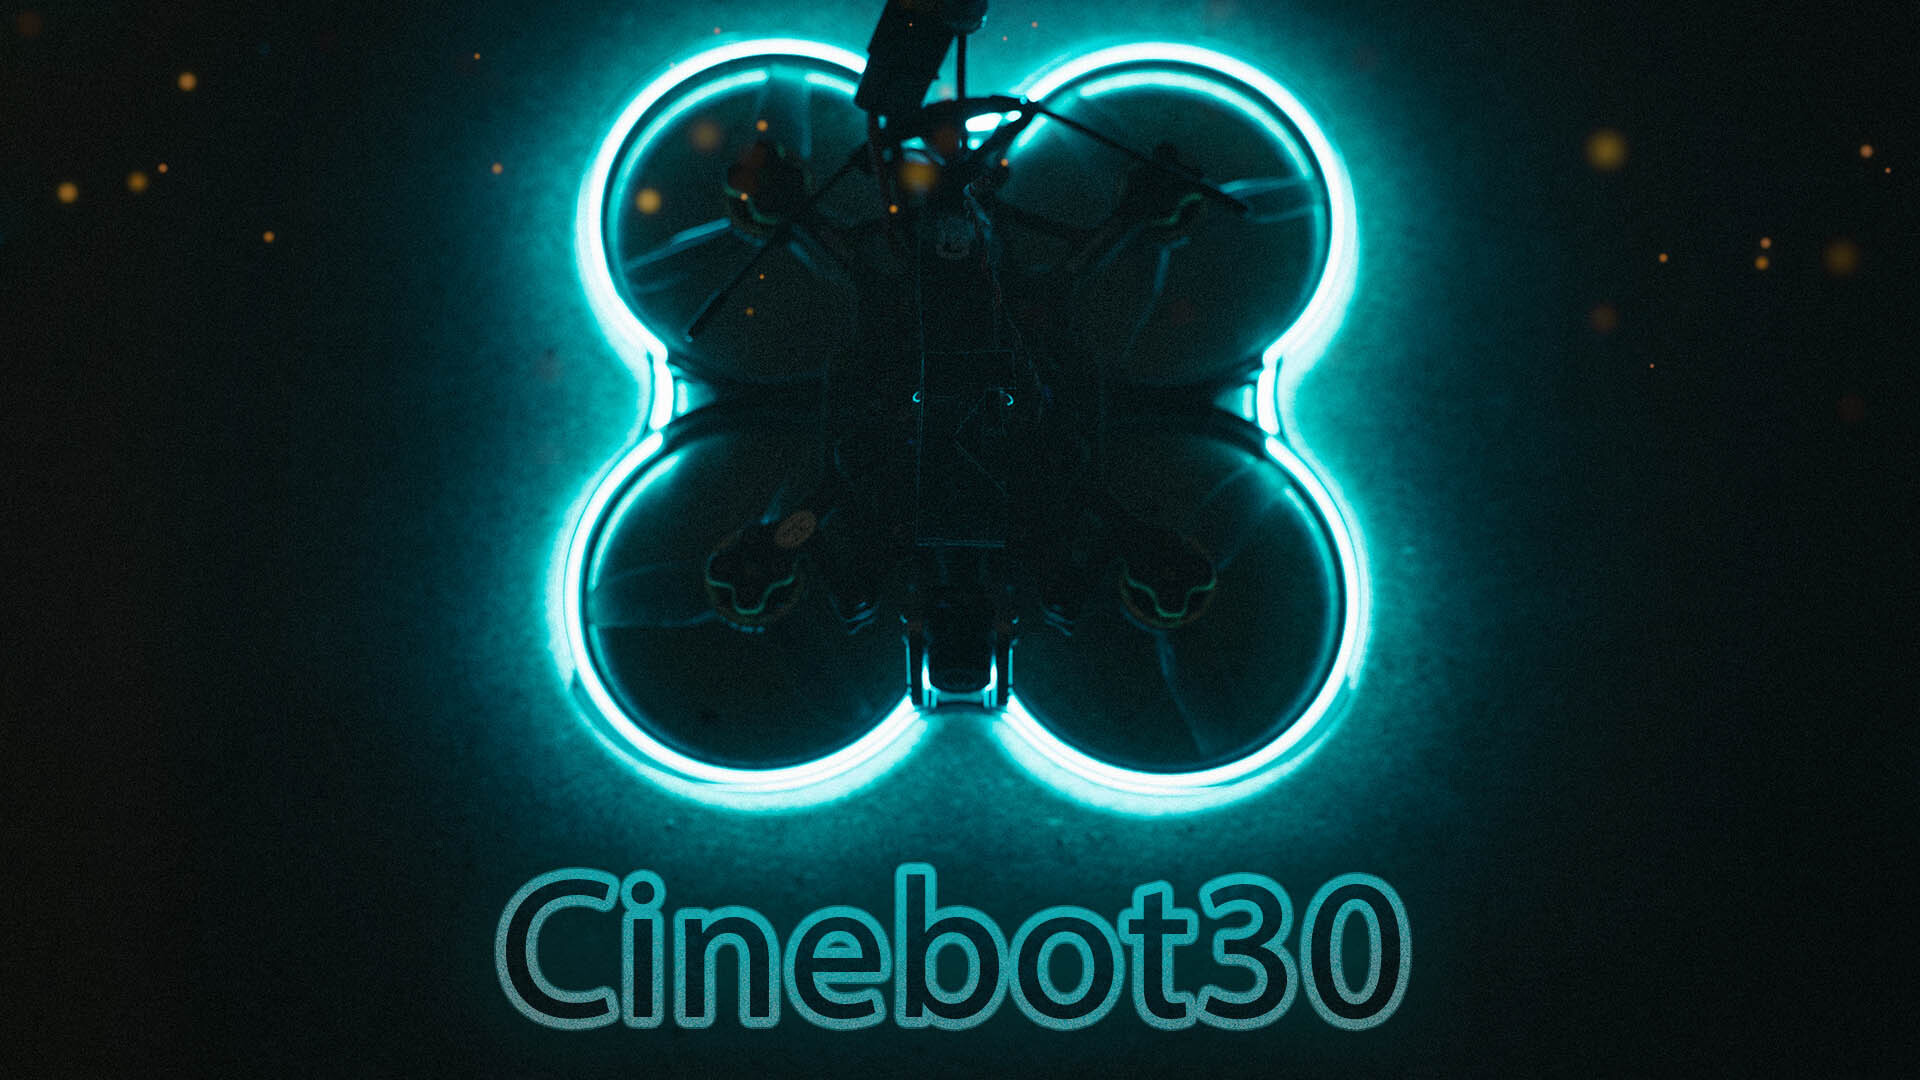 Cinebot 30. GEPRC cinebot30. Cinebot 25. Cinelog25 cinebot25.